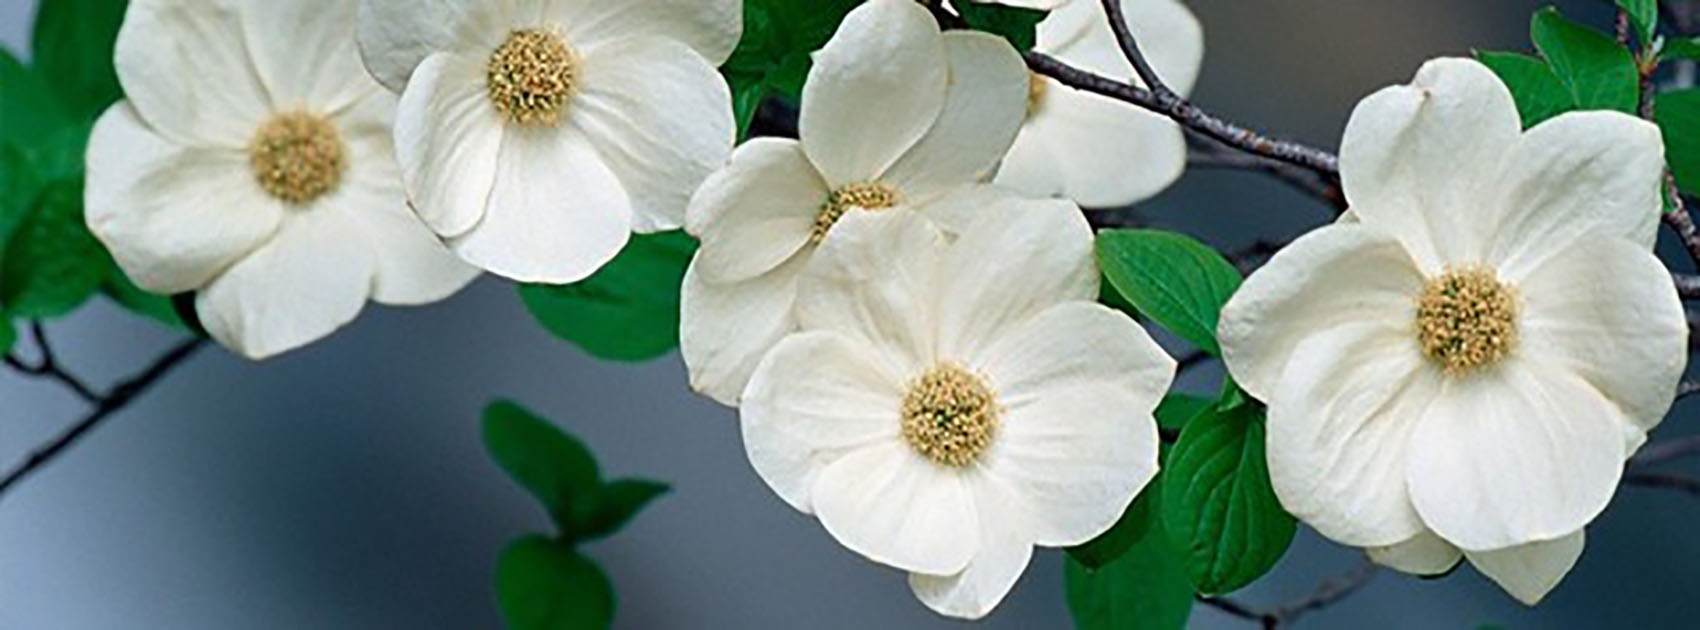 Ảnh bìa của một cành hoa trắng đẹp